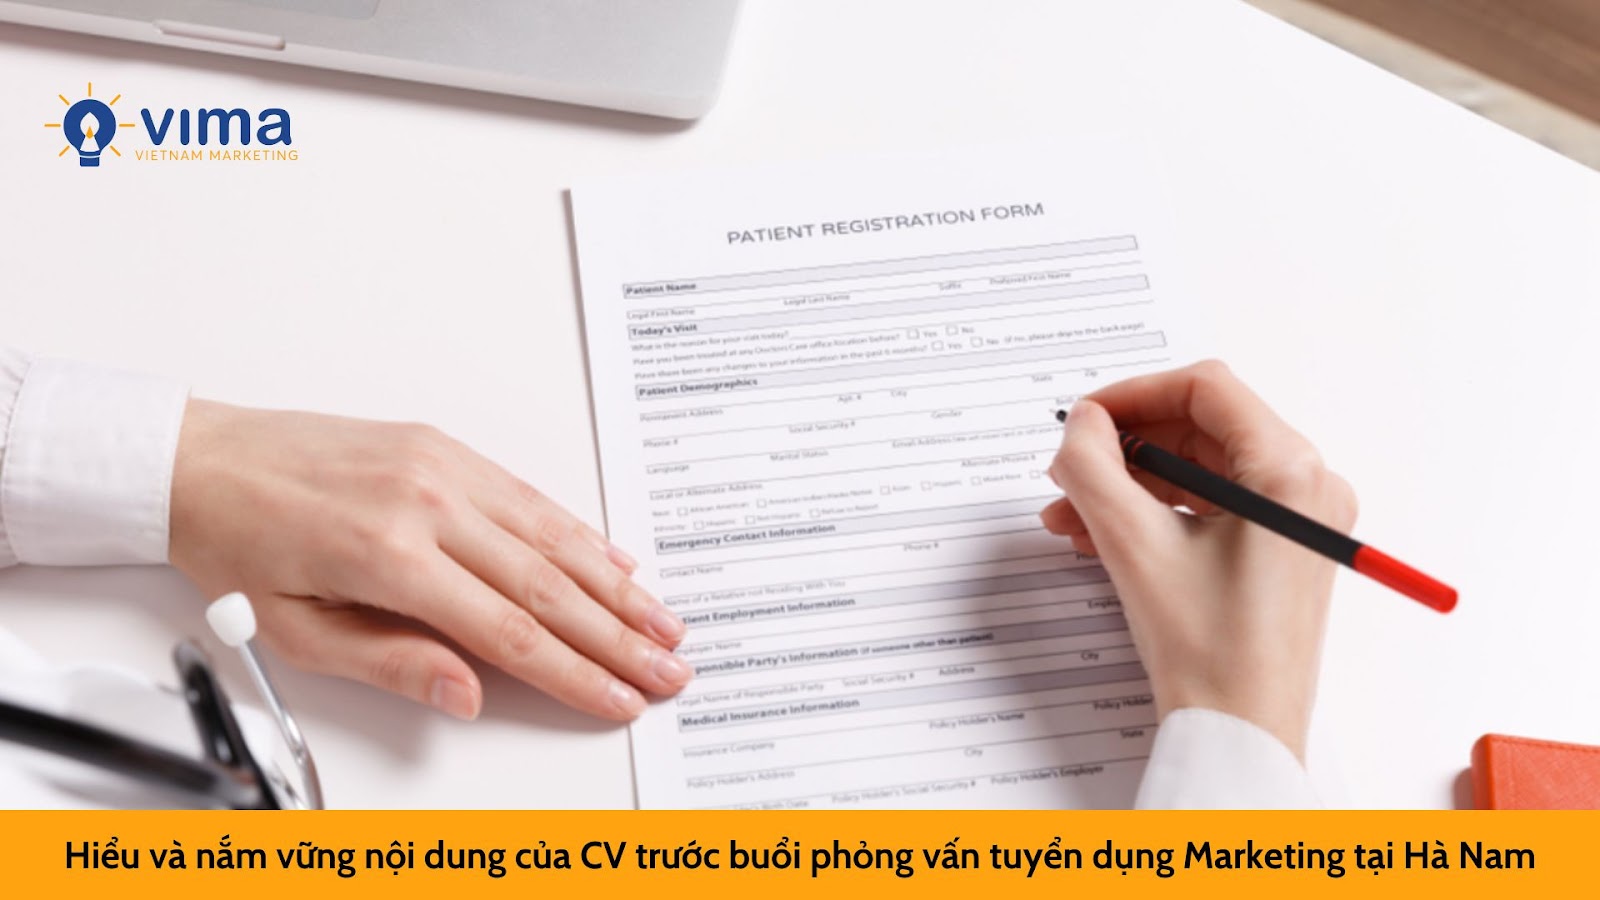 Hiểu và nắm vững nội dung của CV trước buổi phỏng vấn tuyển dụng Marketing tại Hà Nam